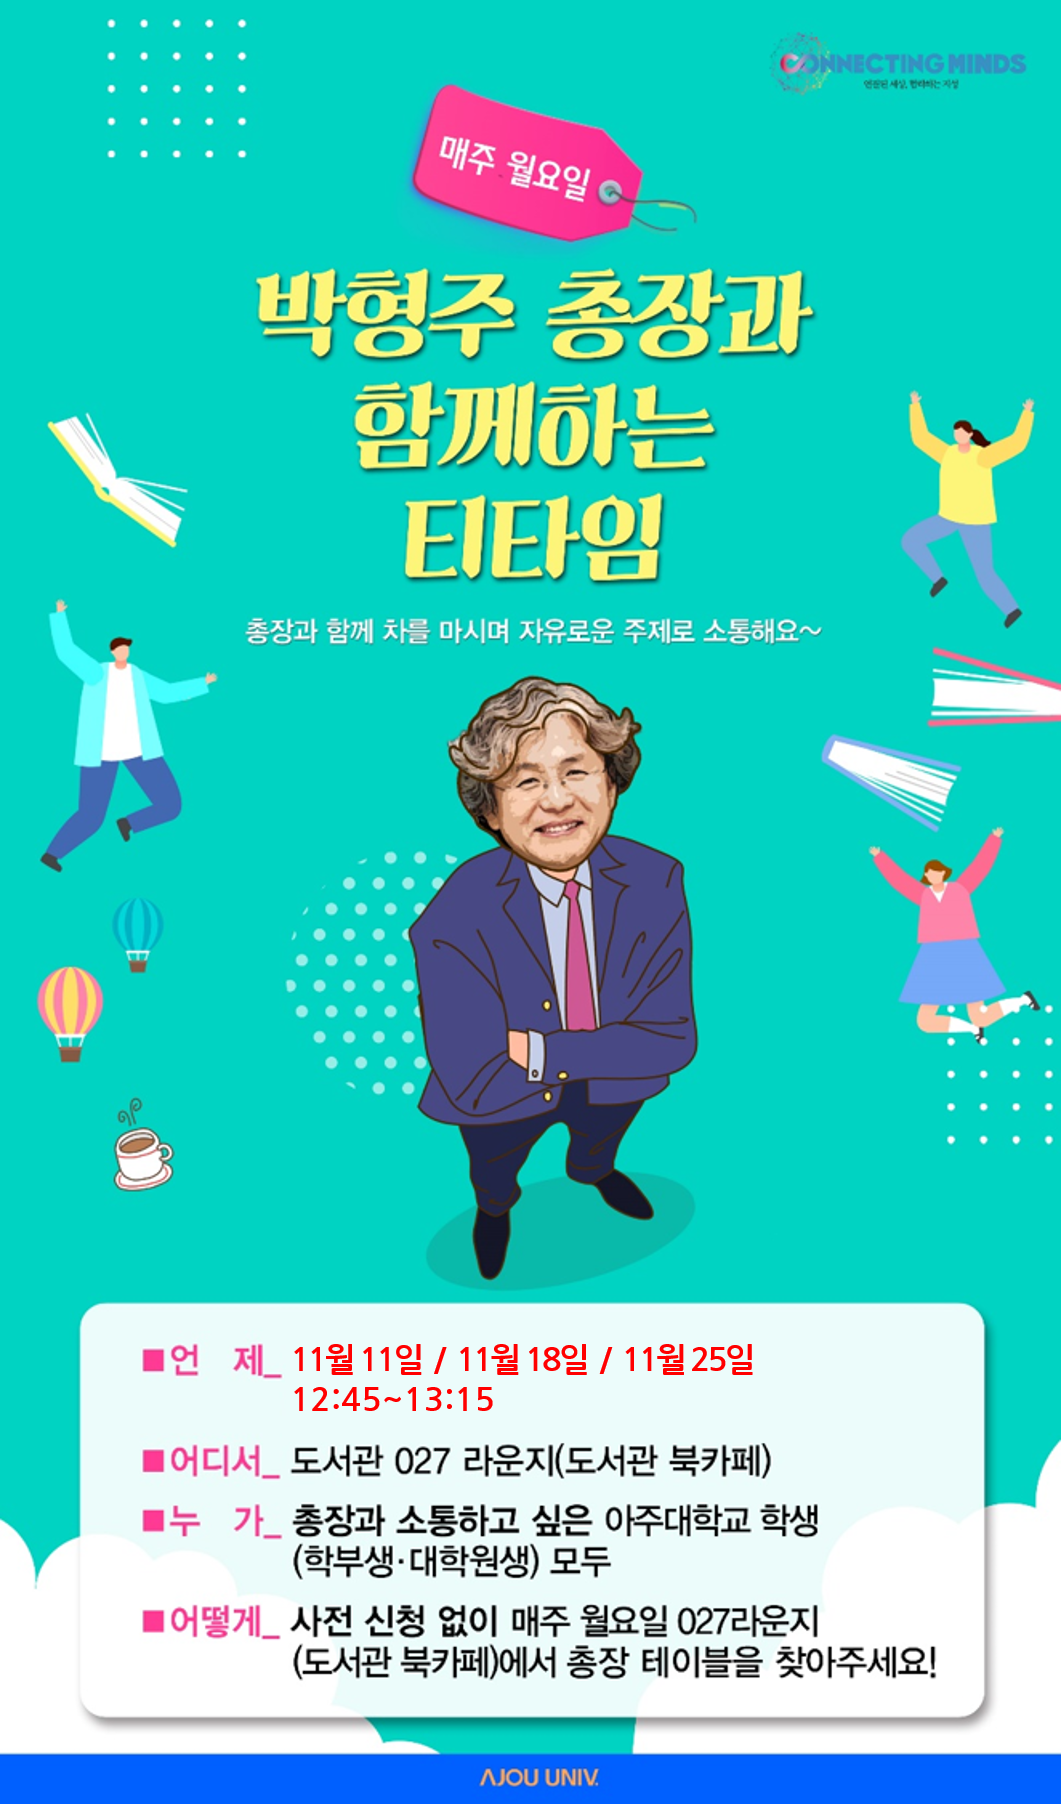 박형주 총장과 함께하는 티타임